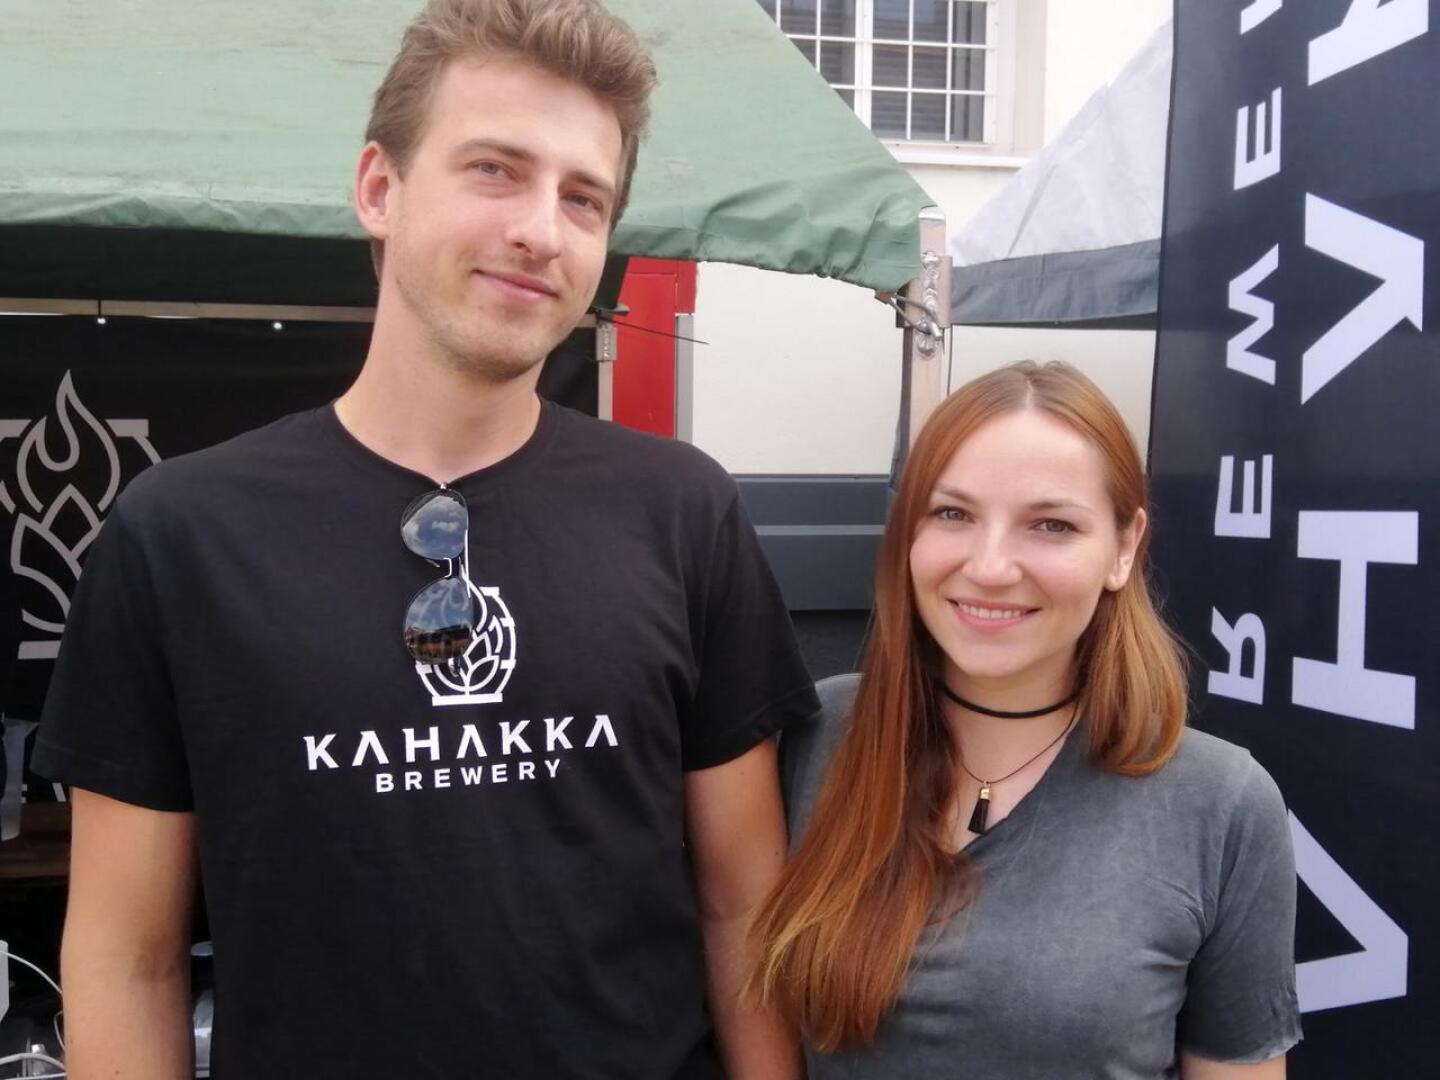 Jakub tuli tyttöystävänsä Angelikan kanssa pistäytymään Kokkolassa Kahakka olutfestivaalin takia. 